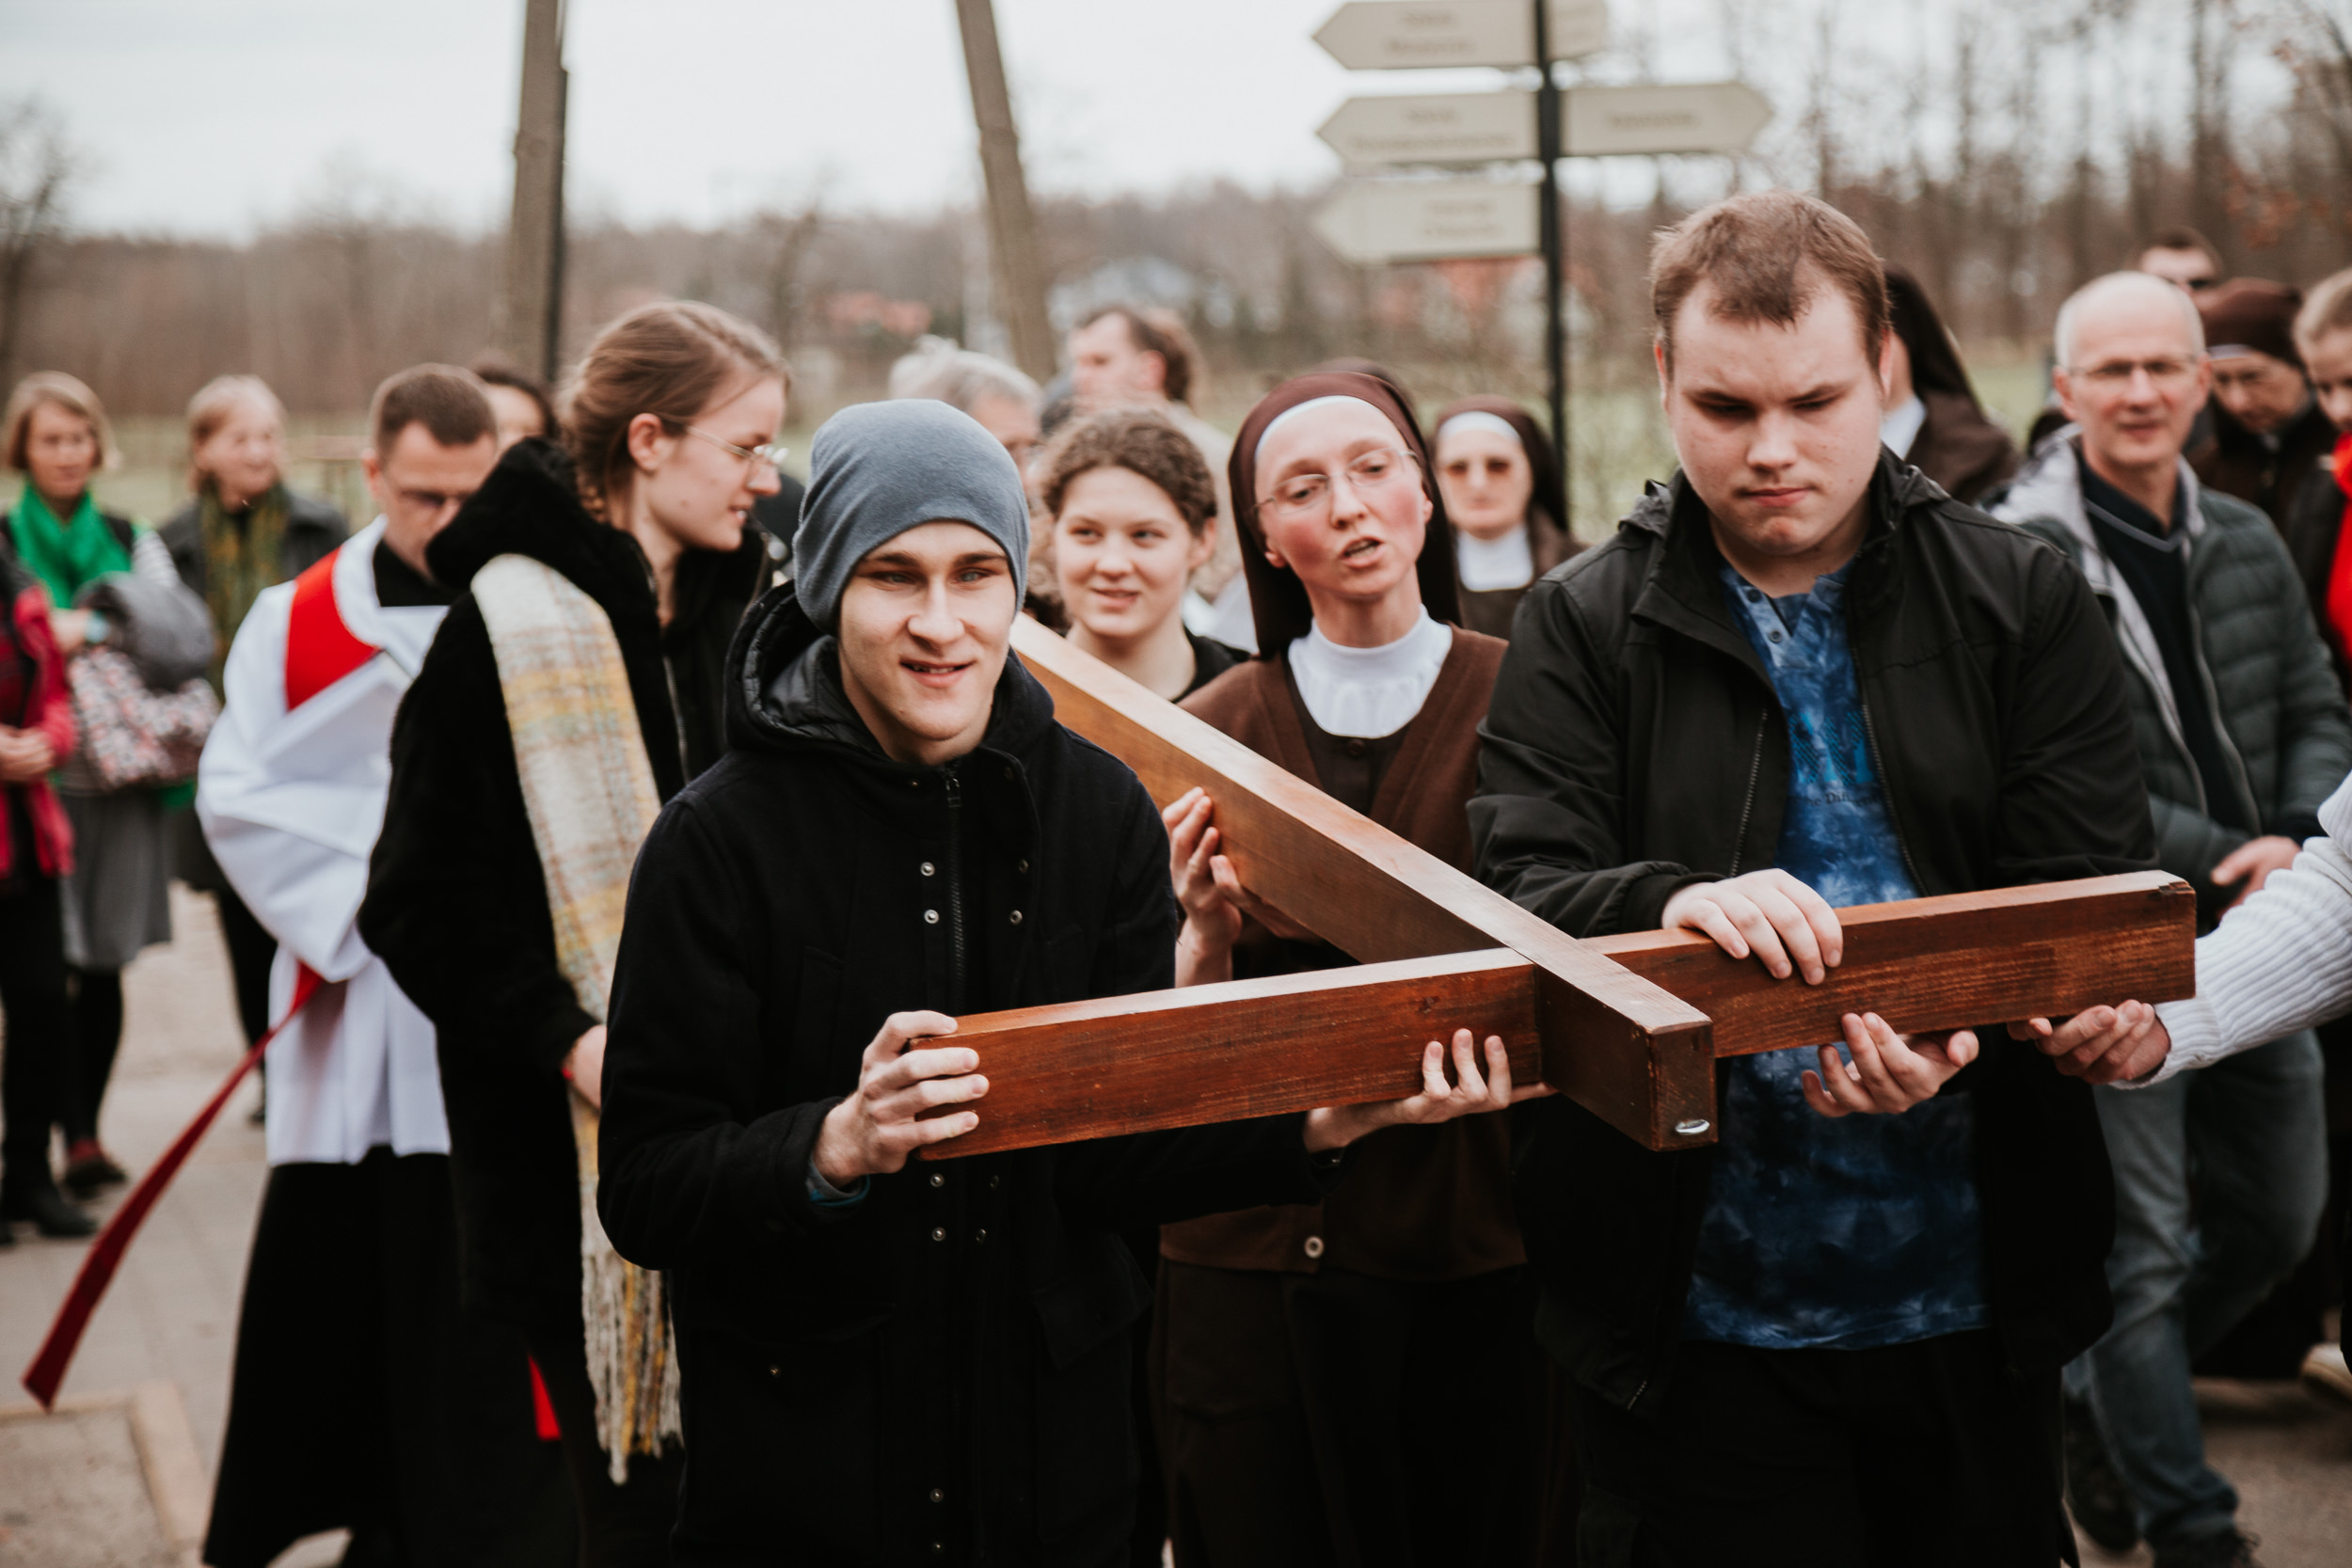 Krzyż niosą uczniowie przygotowujący się do sakramentu bierzmowania.